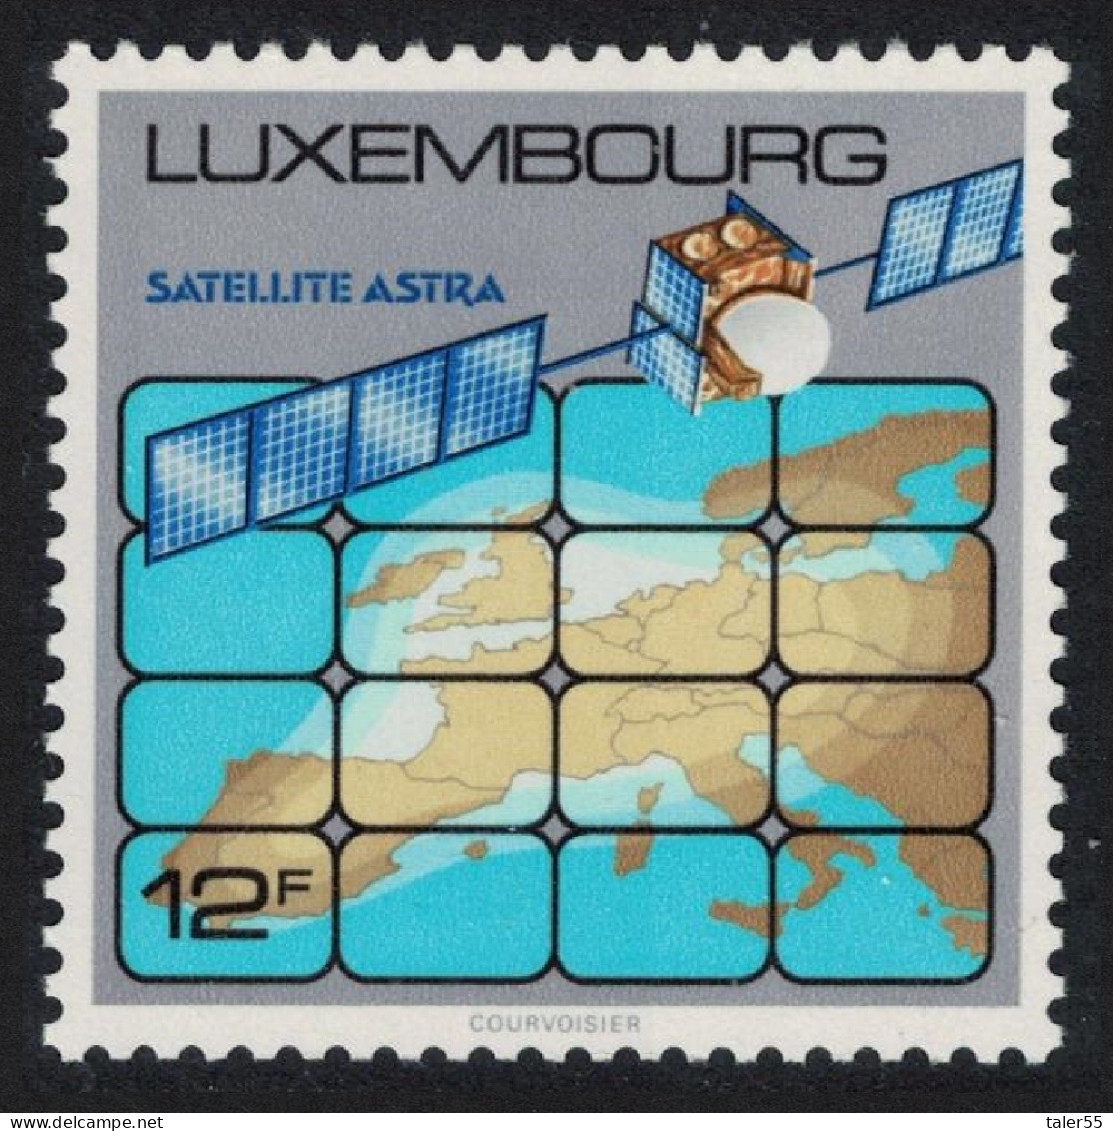 Luxembourg Launch Of 16-channel TV Satellite 1989 MNH SG#1245 MI#1218 - Ungebraucht